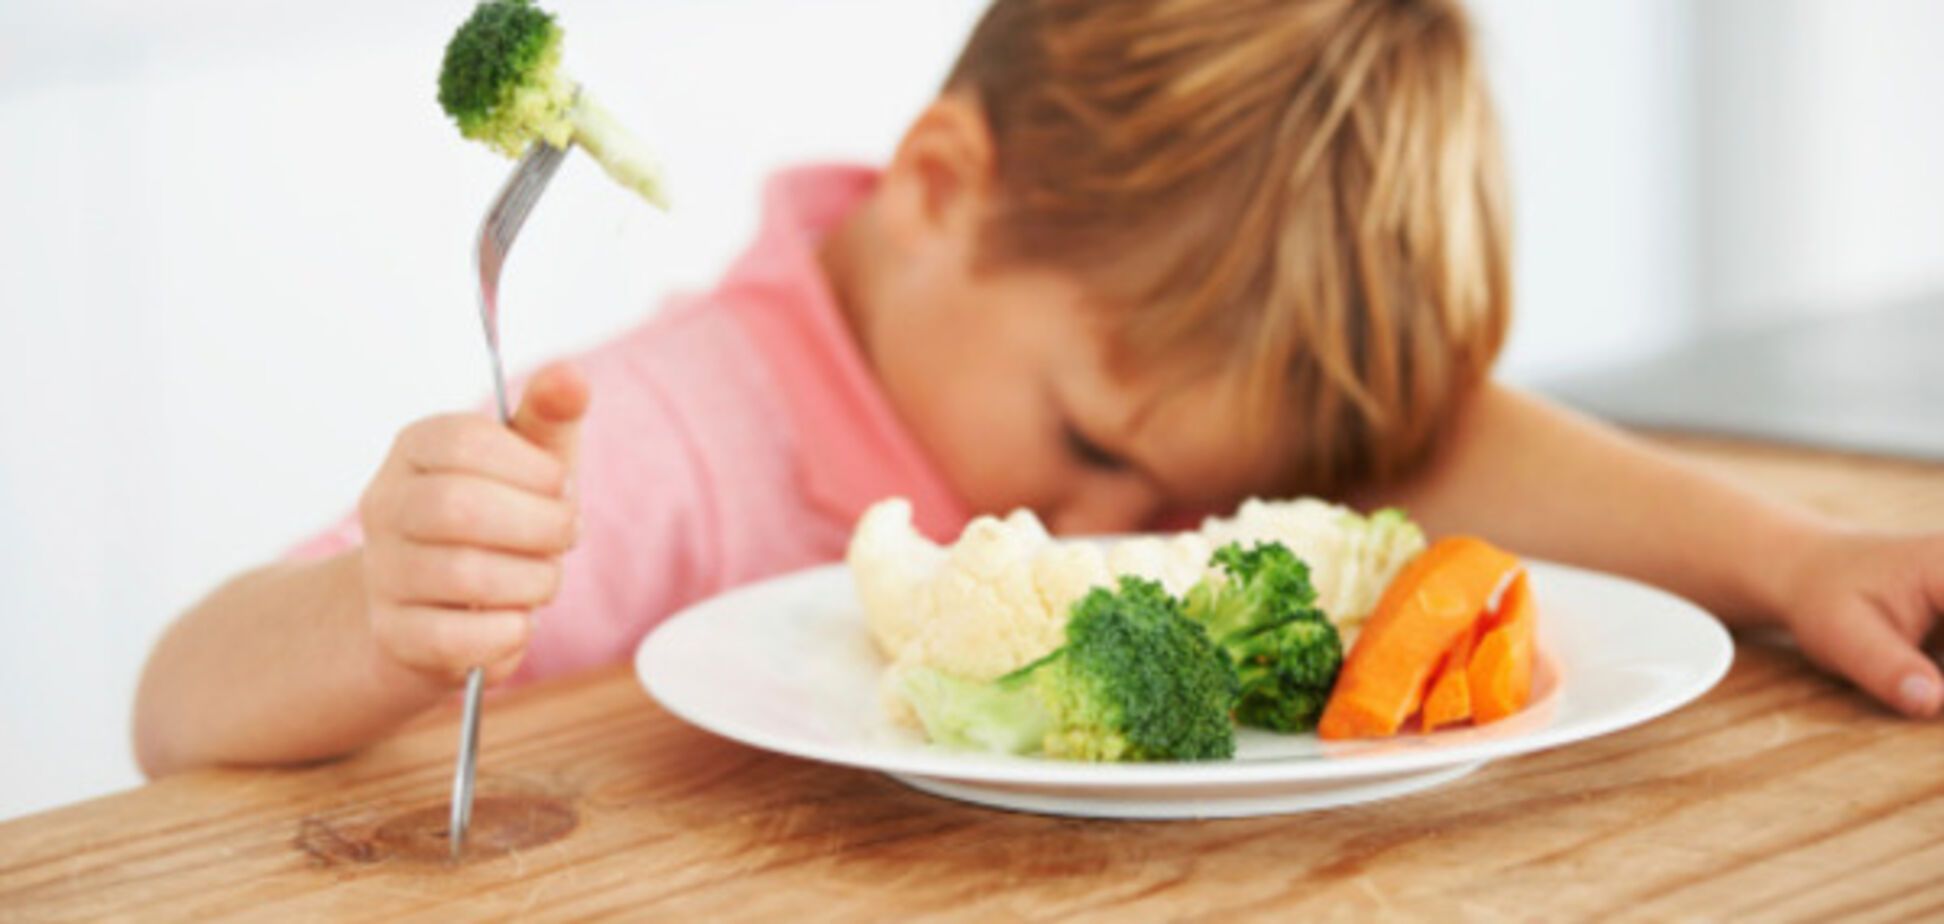 Вчені з'ясували, чому діти відмовляються куштувати нову їжу